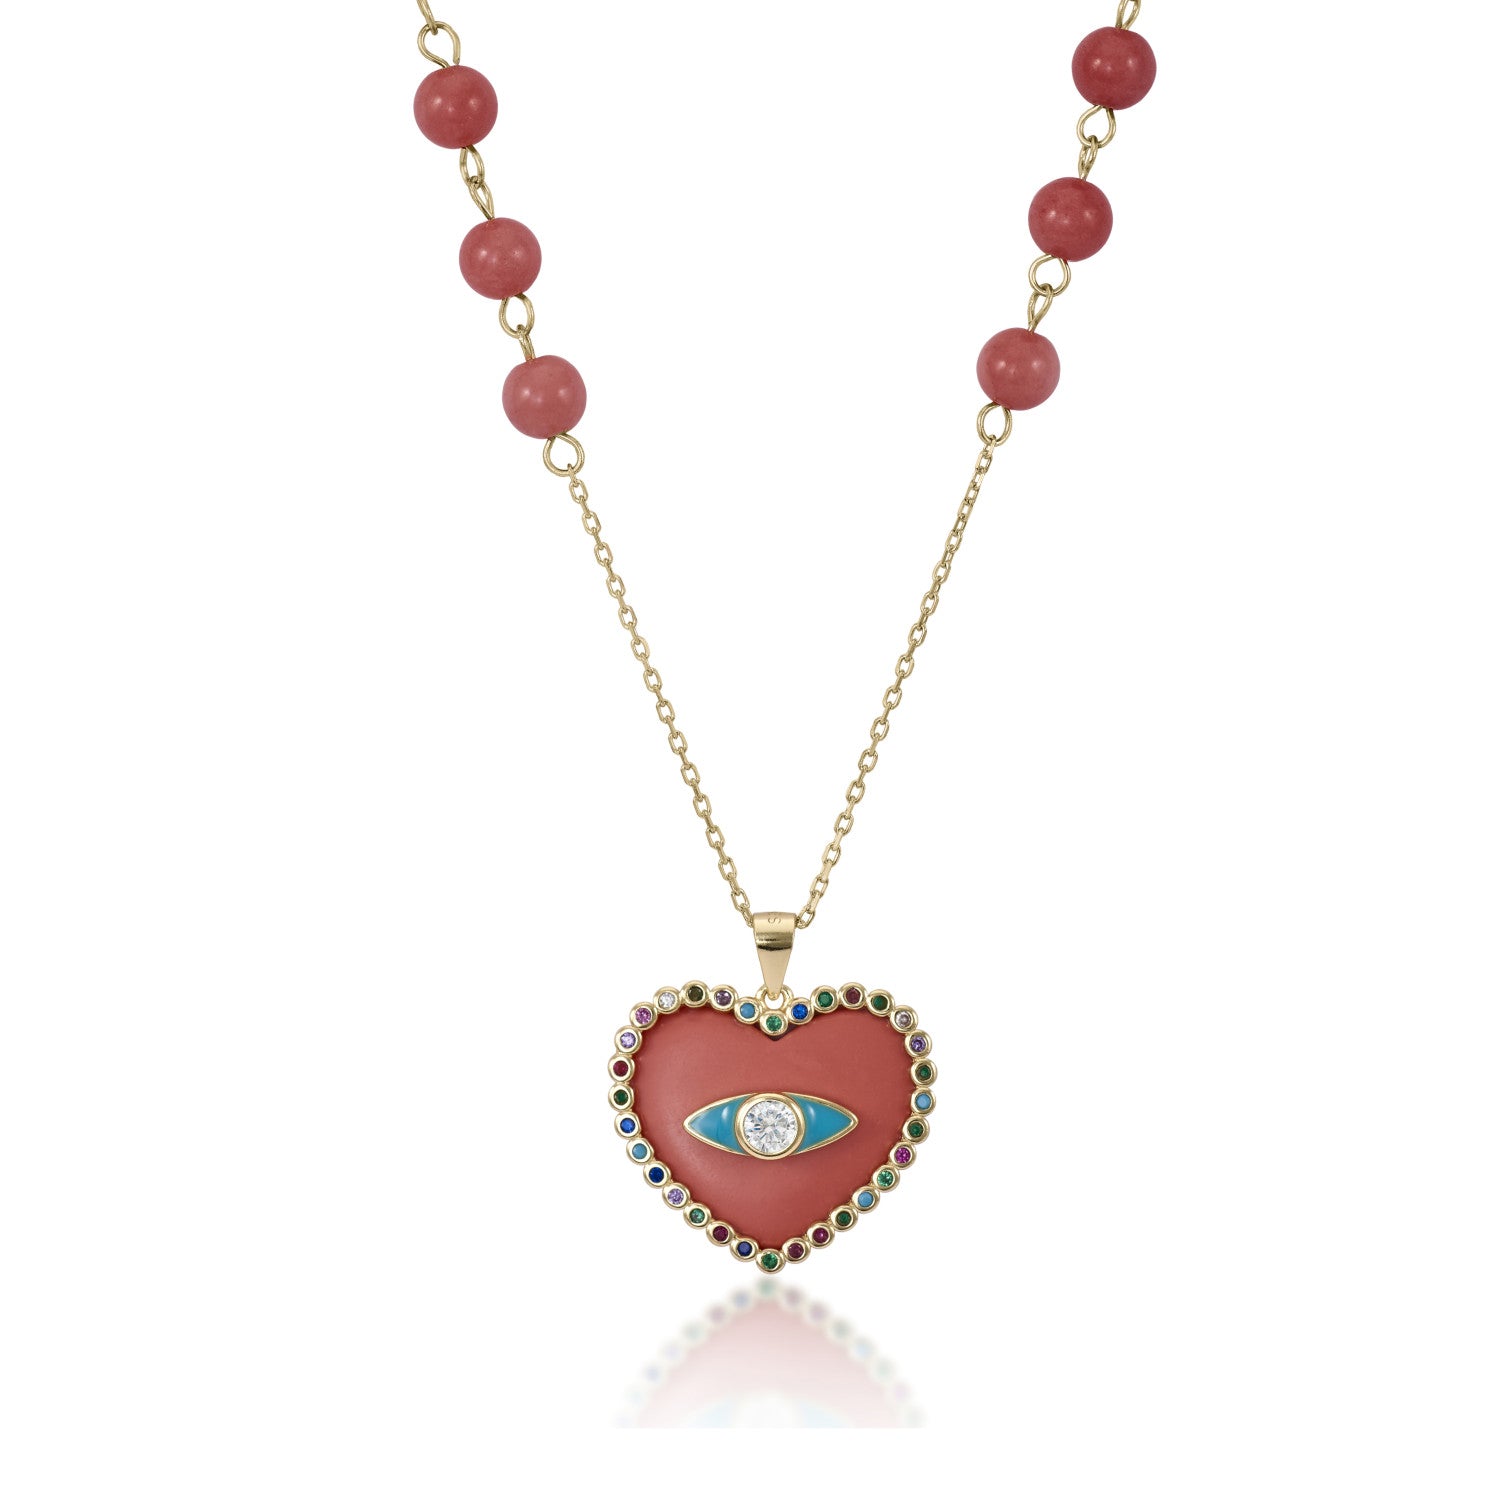 Collar medalla bañada en oro diseño corazón y piedras de colores